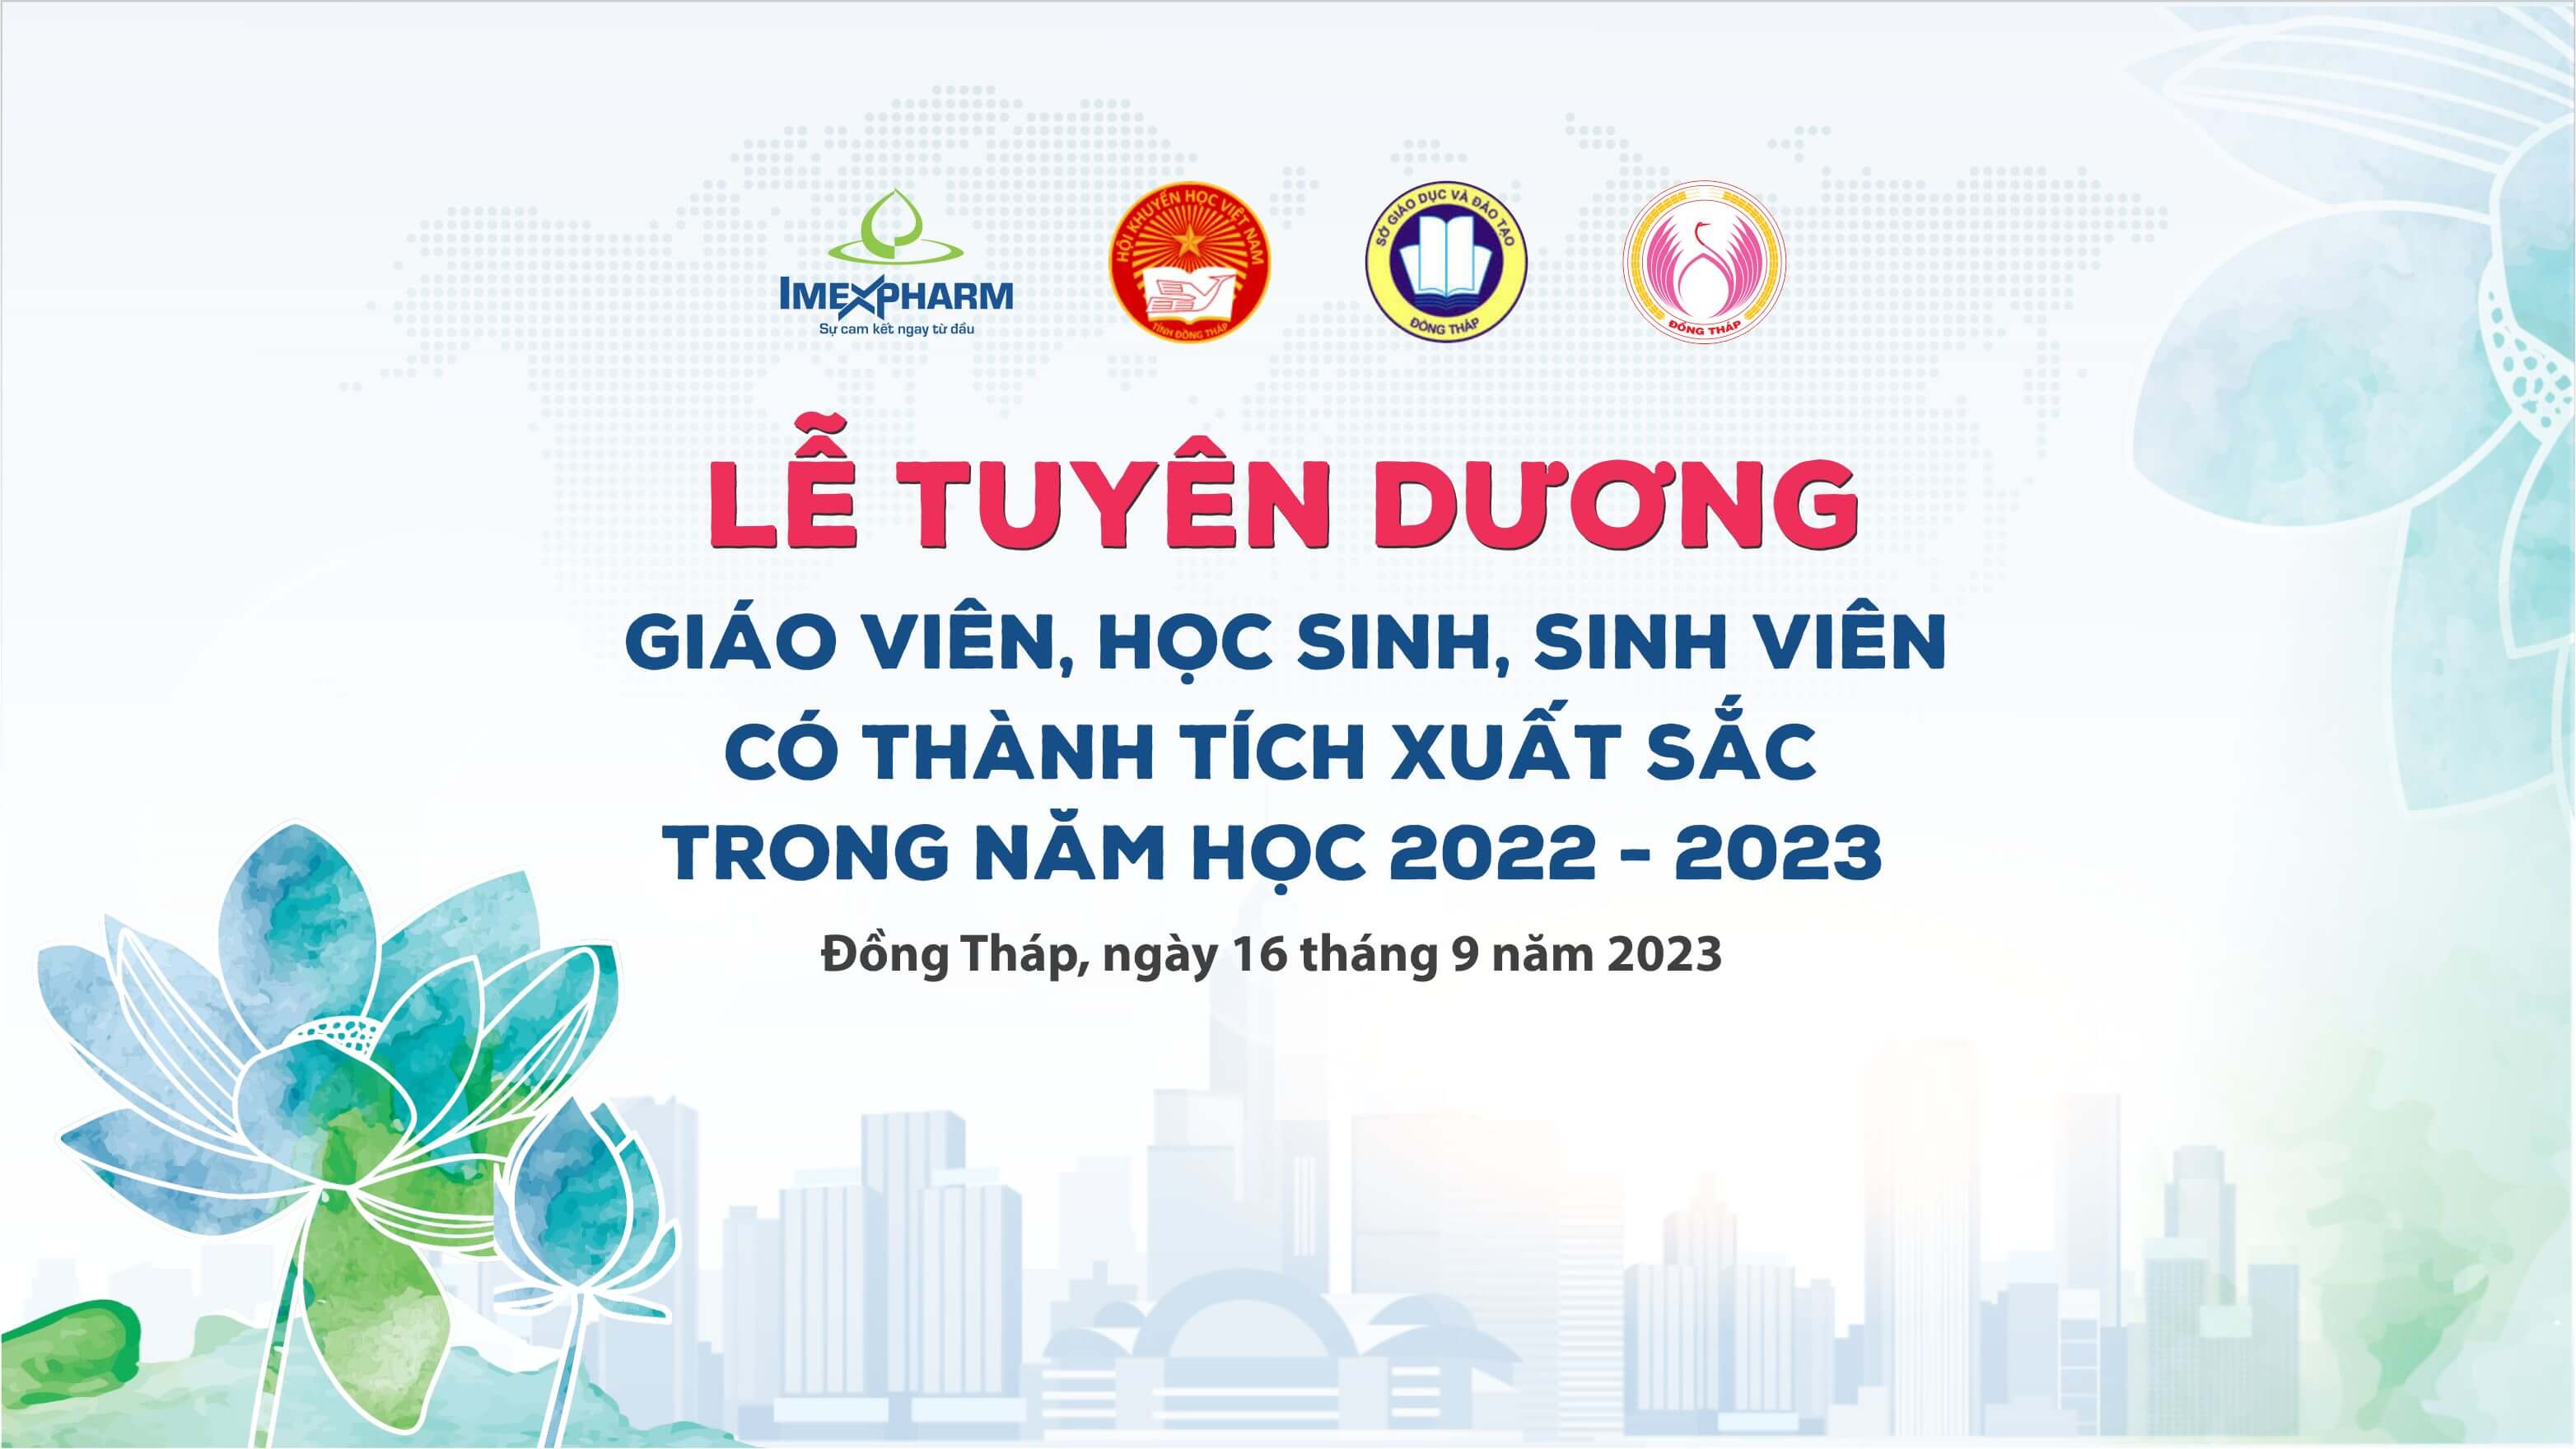 Imexpharm vinh dự tiếp tục đồng hành cùng giải thưởng khuyến học Nguyễn Sinh Sắc năm học 2022-2023